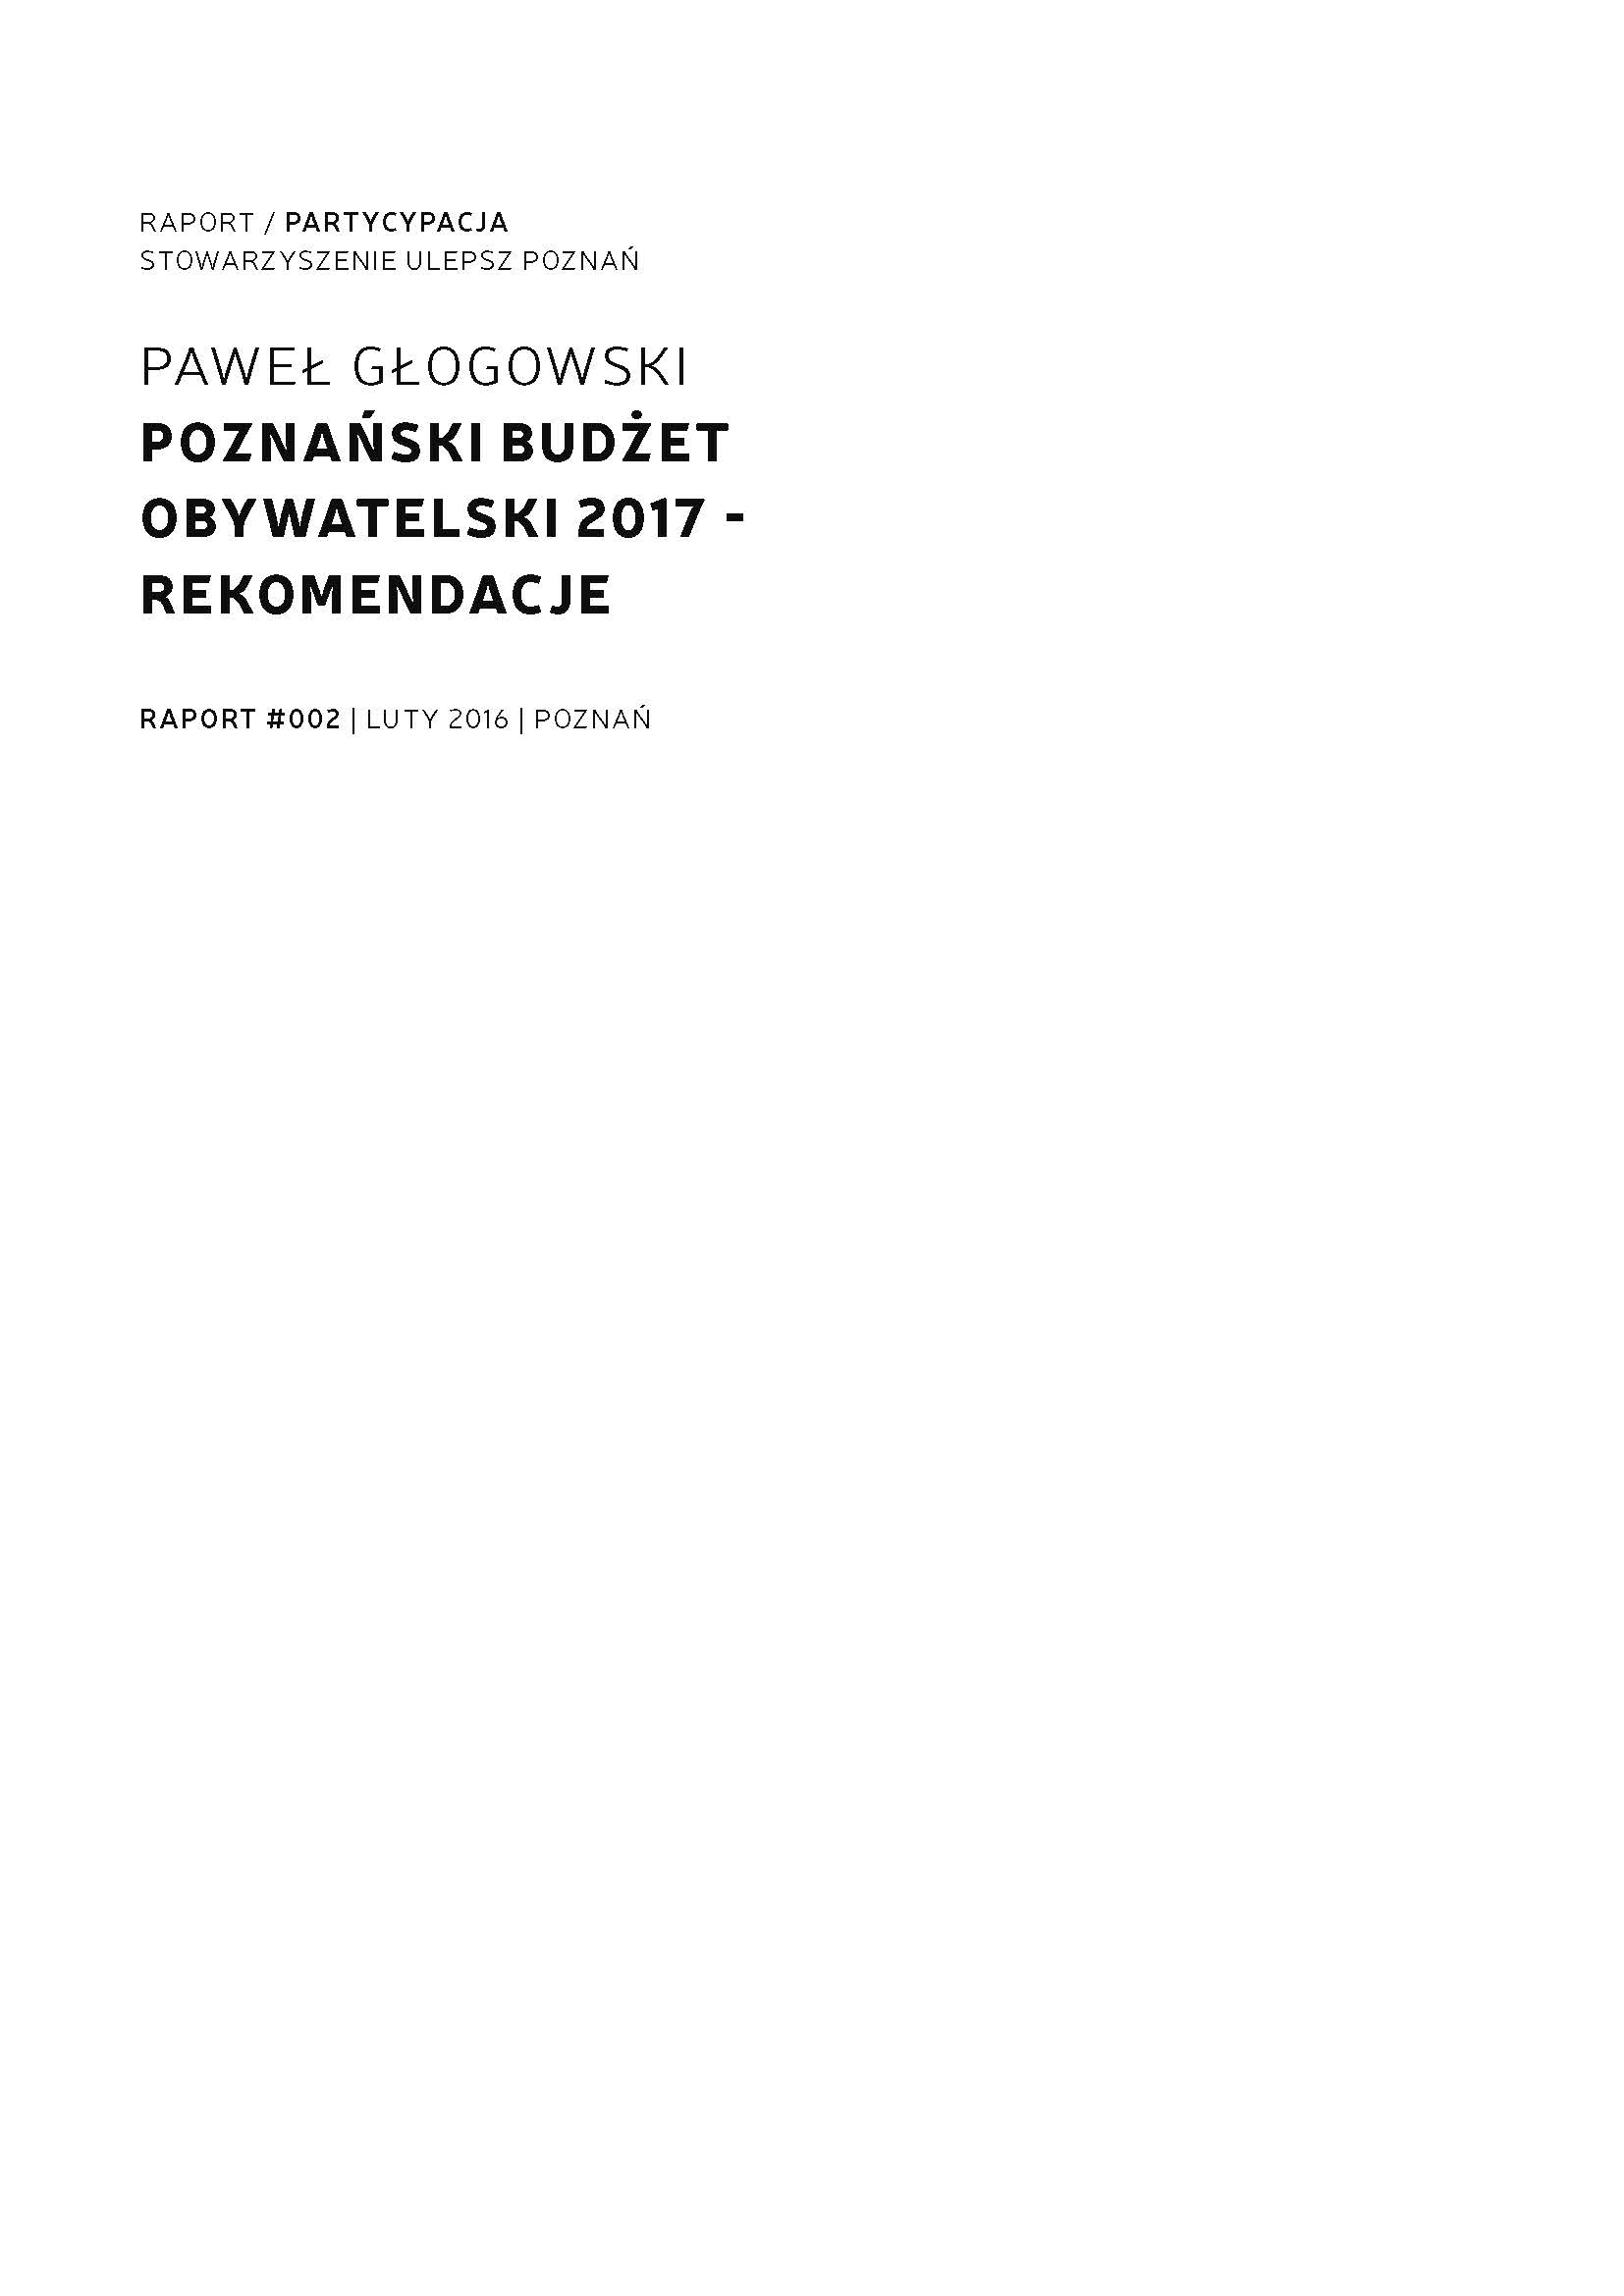 Poznański Budżet Obywatelski 2017 – Rekomendacje